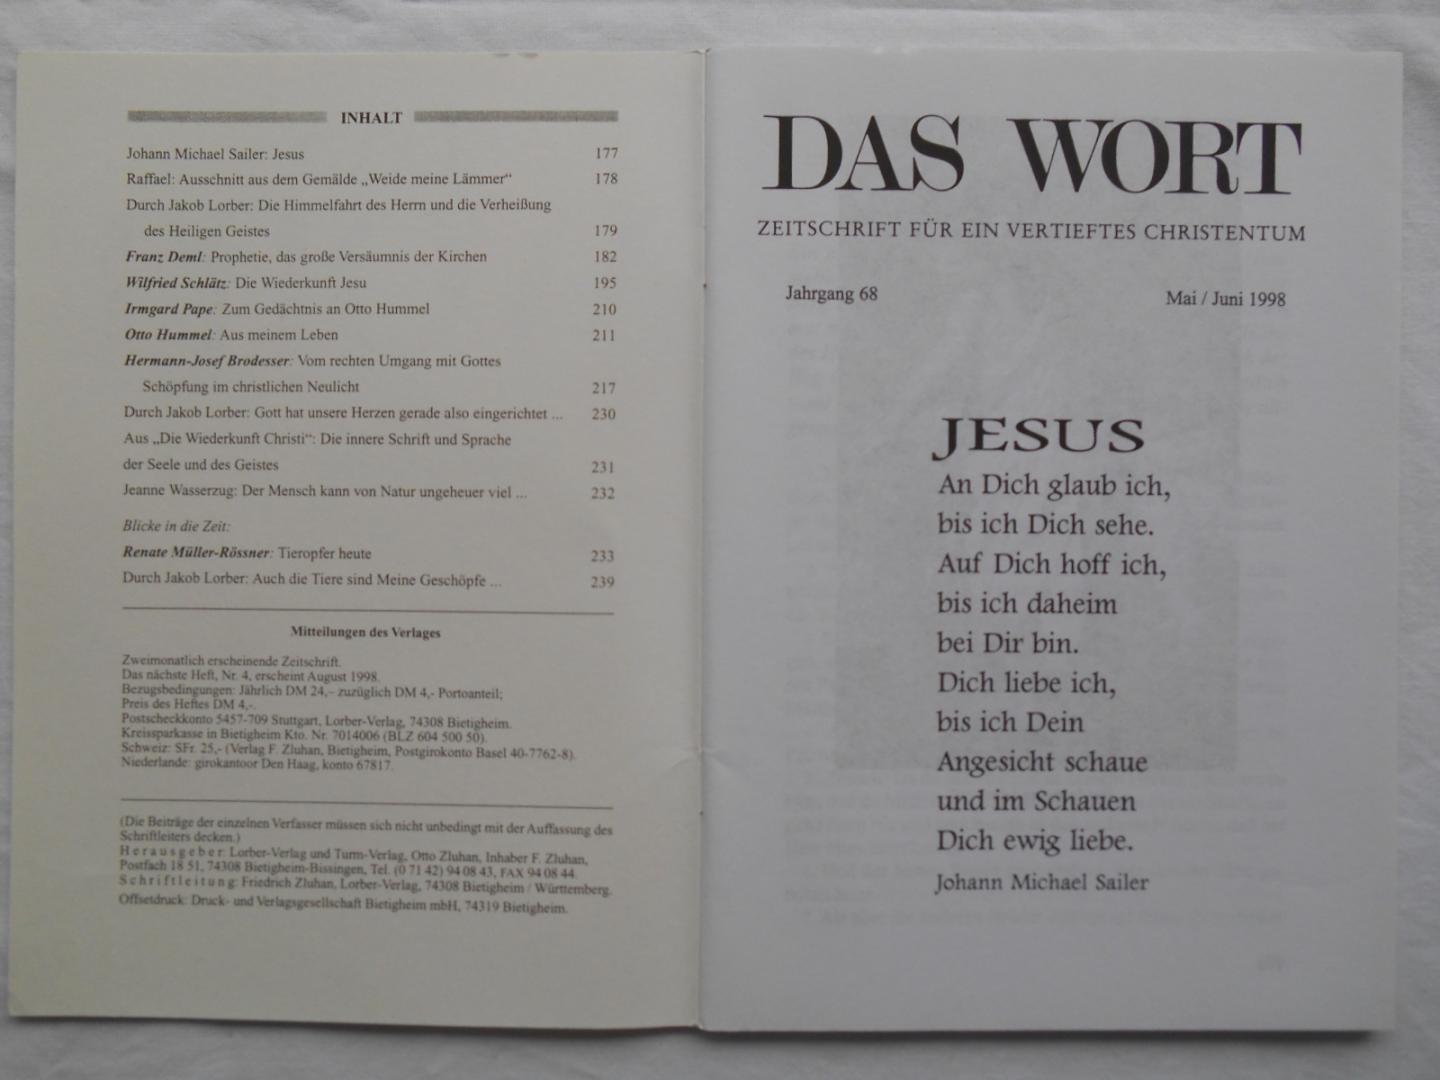 Zeitschrift fur ein vertieftes Christentum - Das Wort